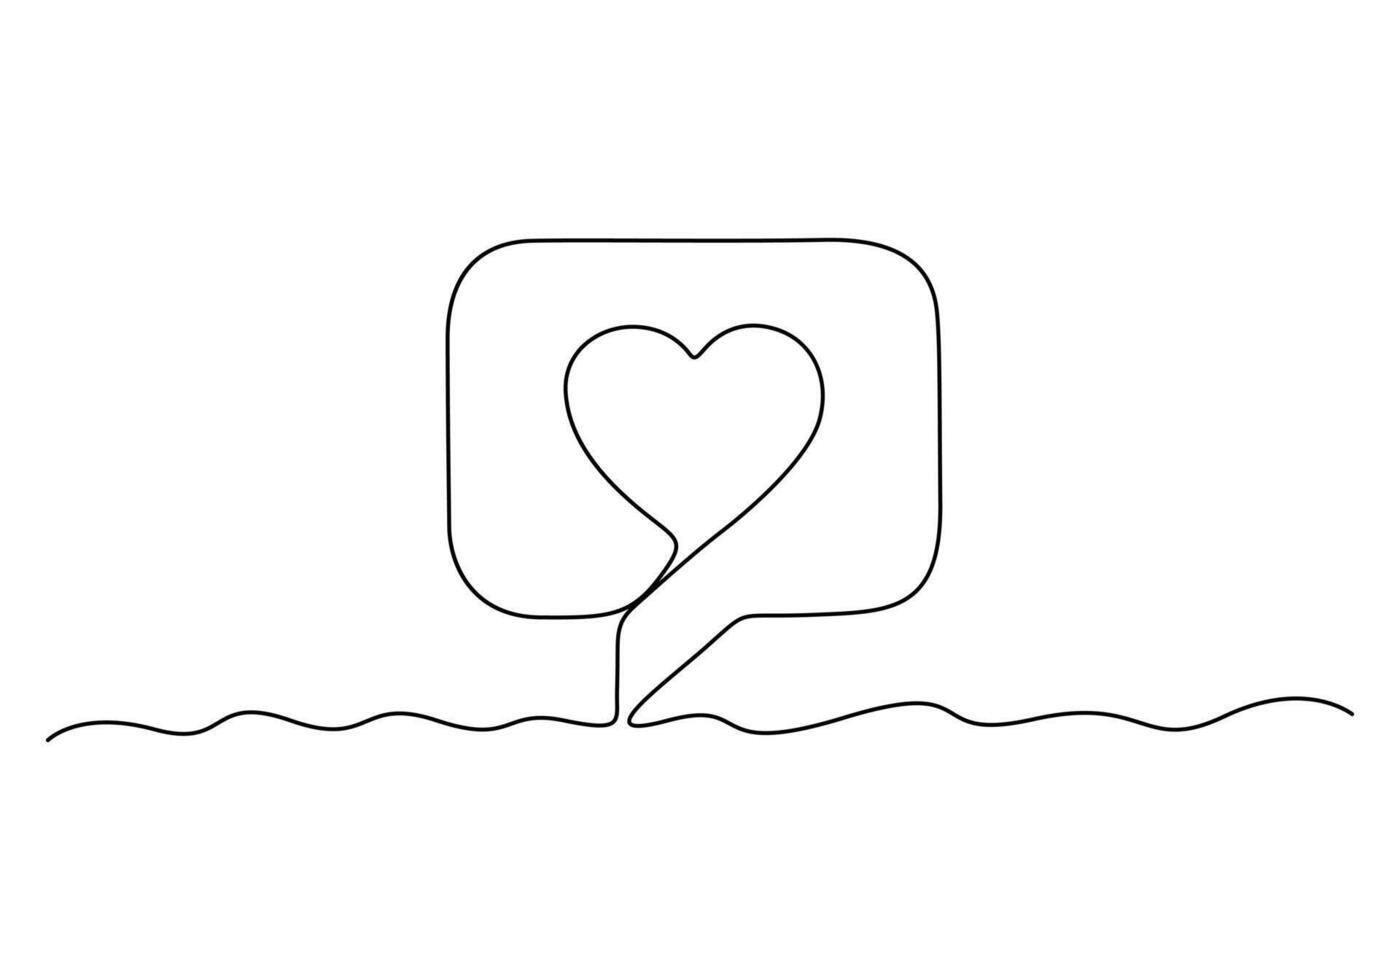 ett kontinuerlig linje teckning av hjärta tycka om symbol linje konst tycka om tecken baner begrepp vektor illustration